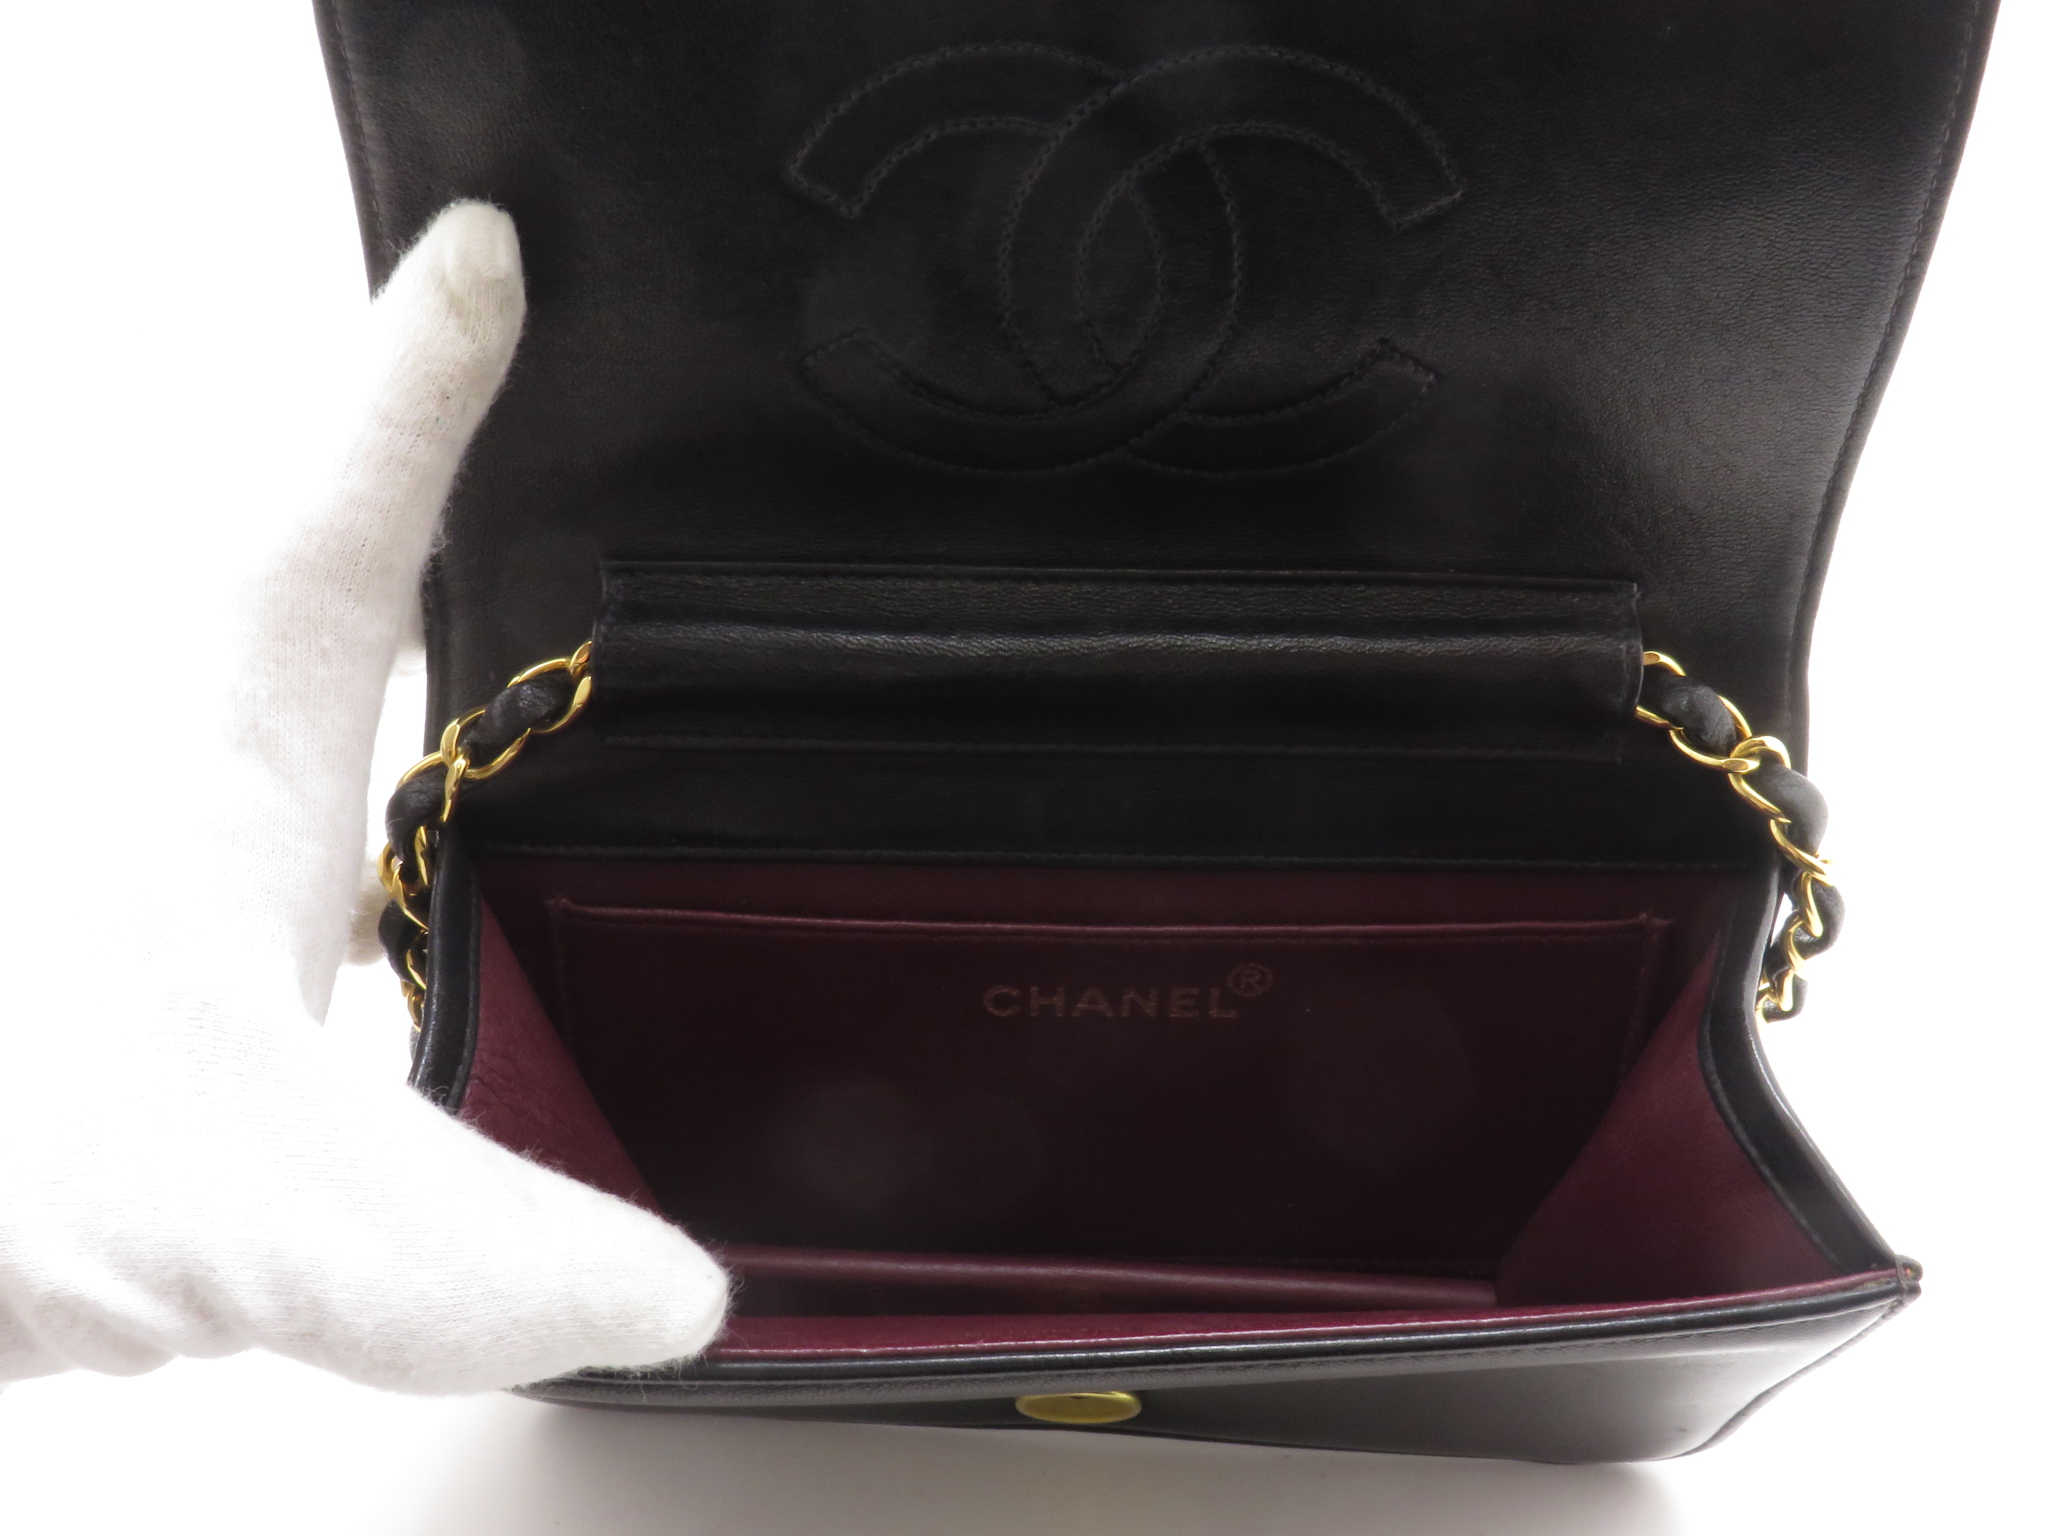 Chanel シャネル フルフラッププッシュロックマトラッセ チェーンショルダーバッグ ラムスキン ブラック ゴールド金具 431 の購入なら 質 の大黒屋 公式